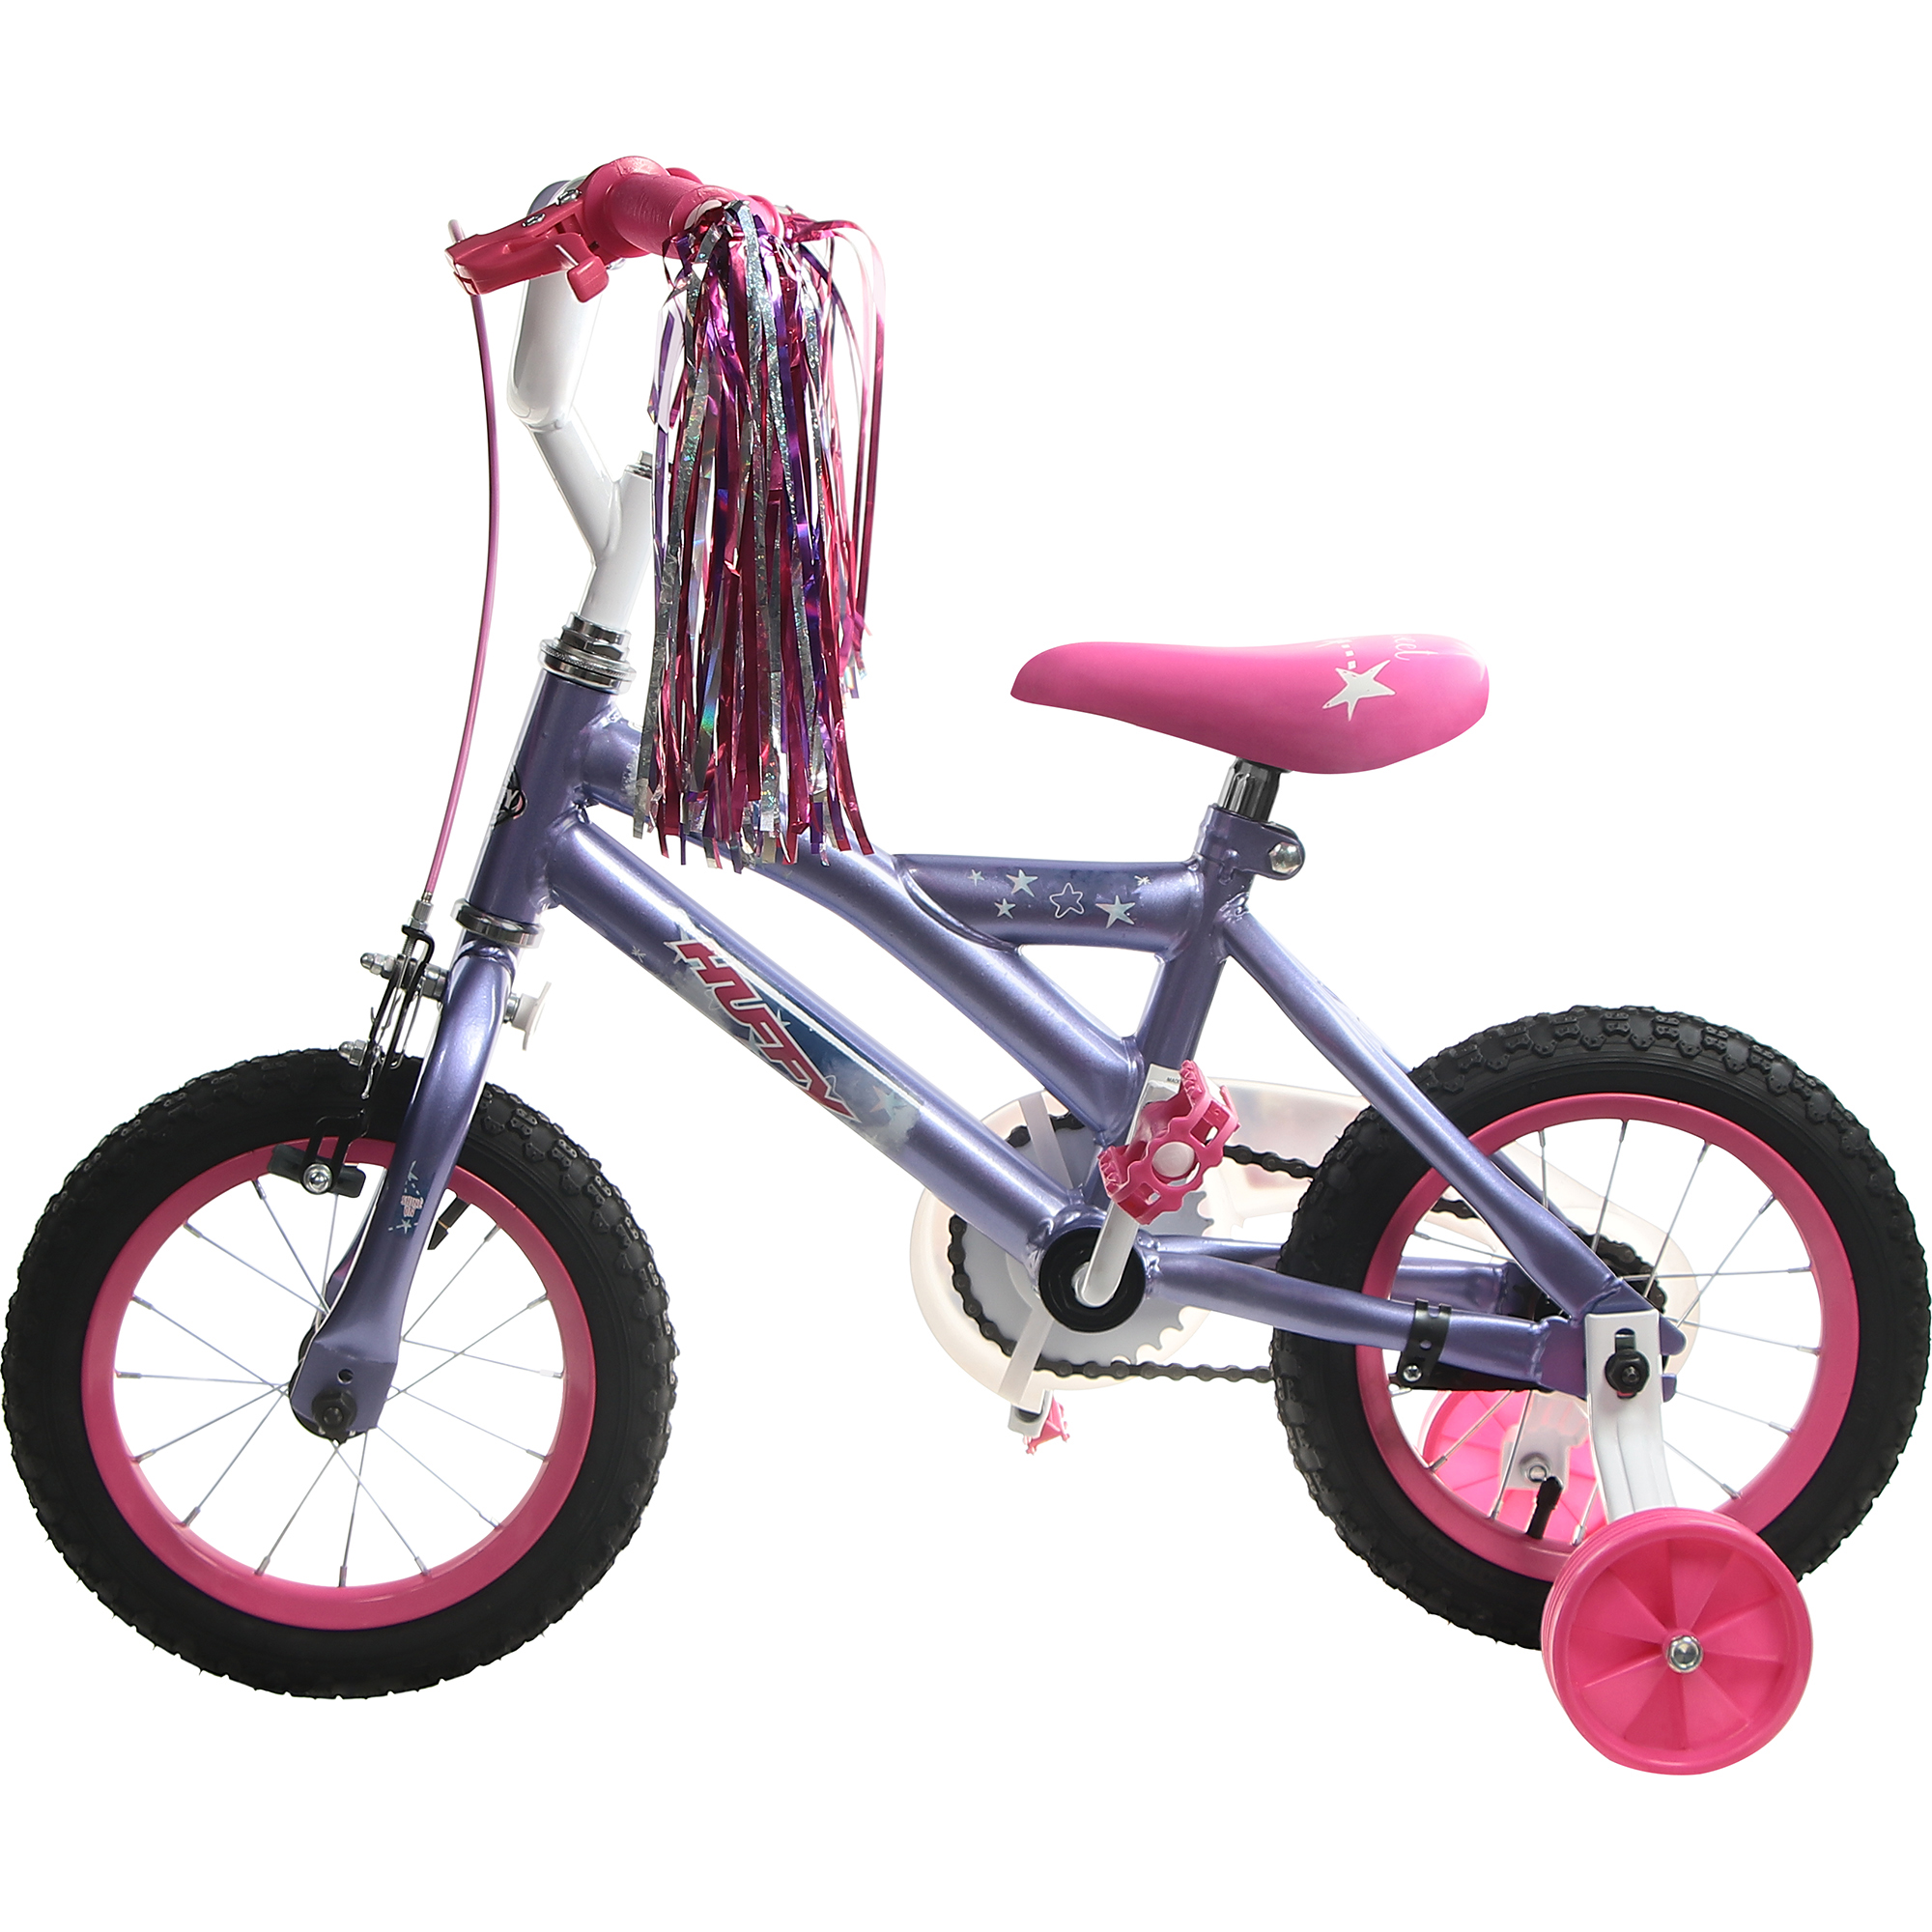 Велосипед детский Huffy So sweet, 12, для девочек велосипед детский huffy so sweet бирюзовый 20 для девочек